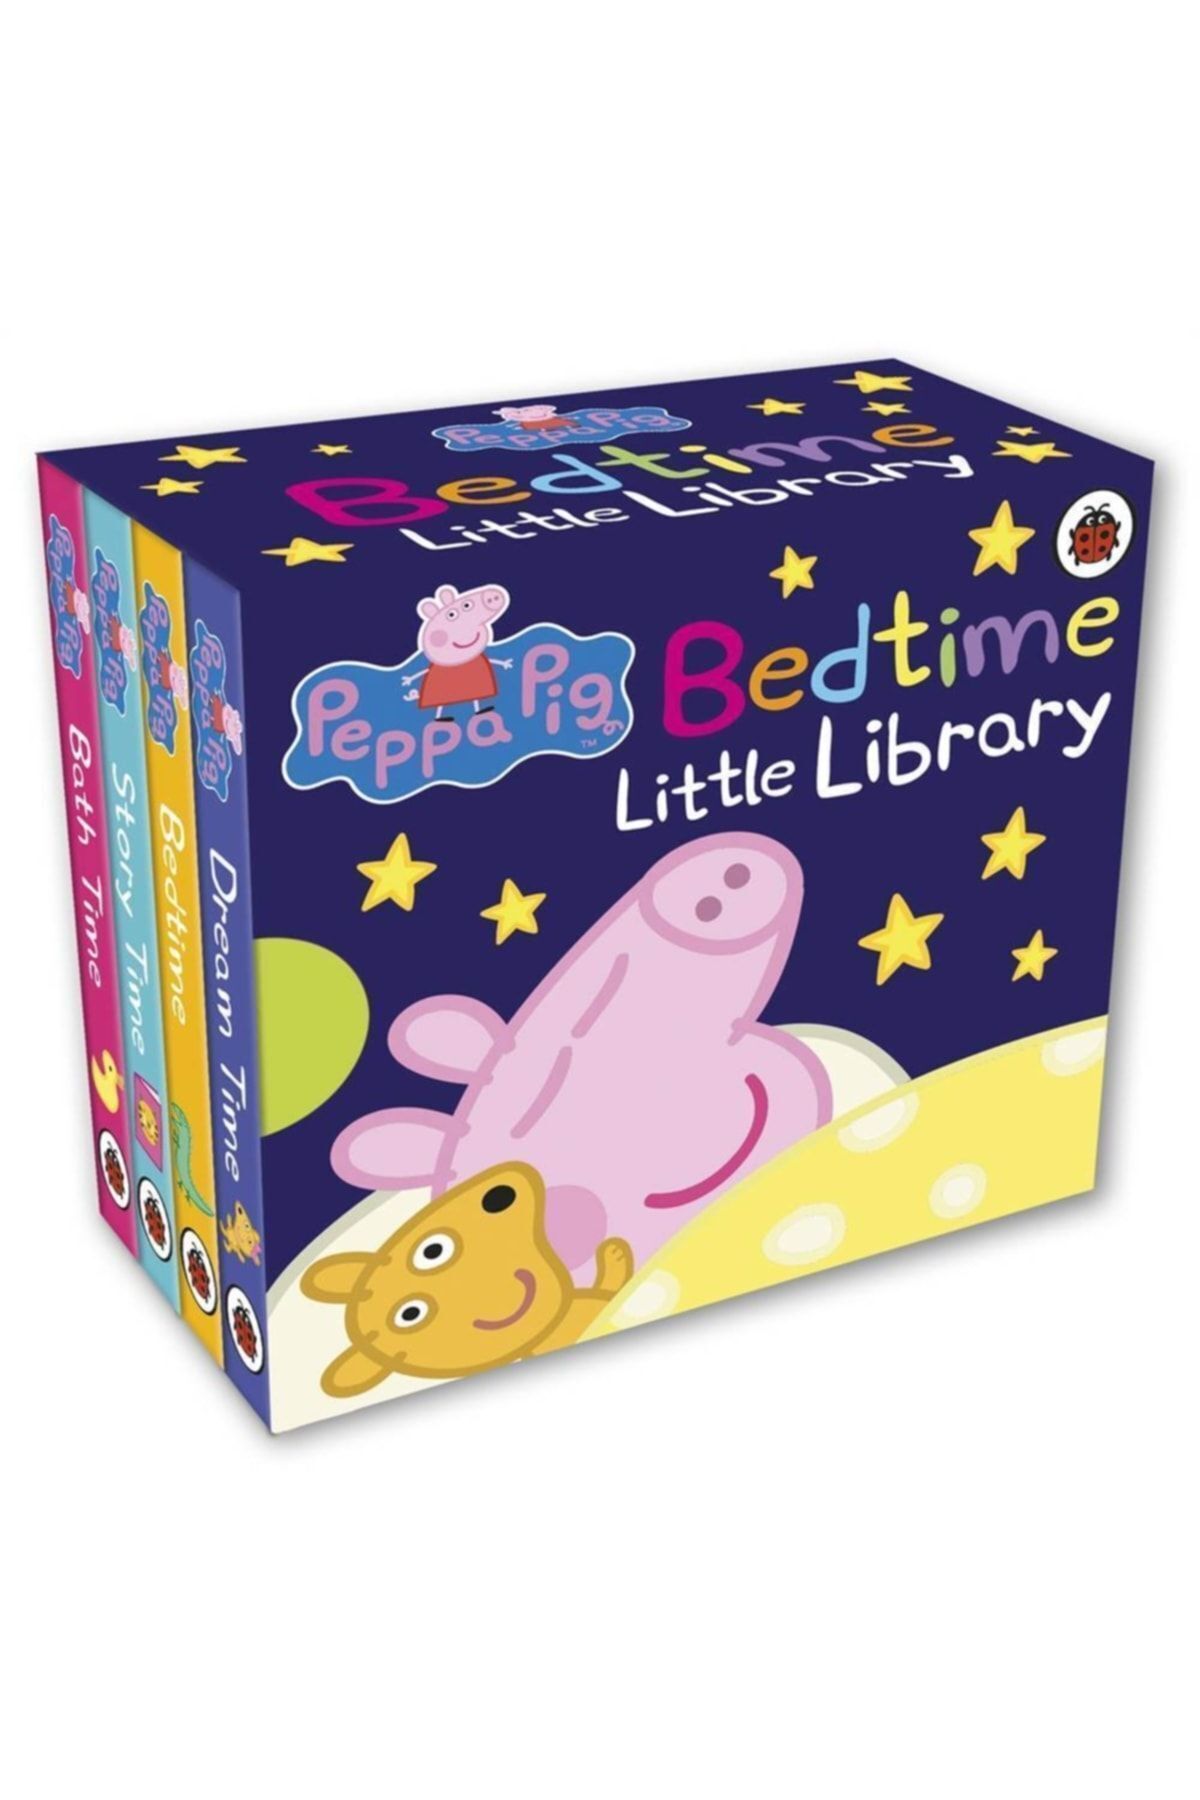 Ladybird Book Bedtime Little Library - Peppa Pig